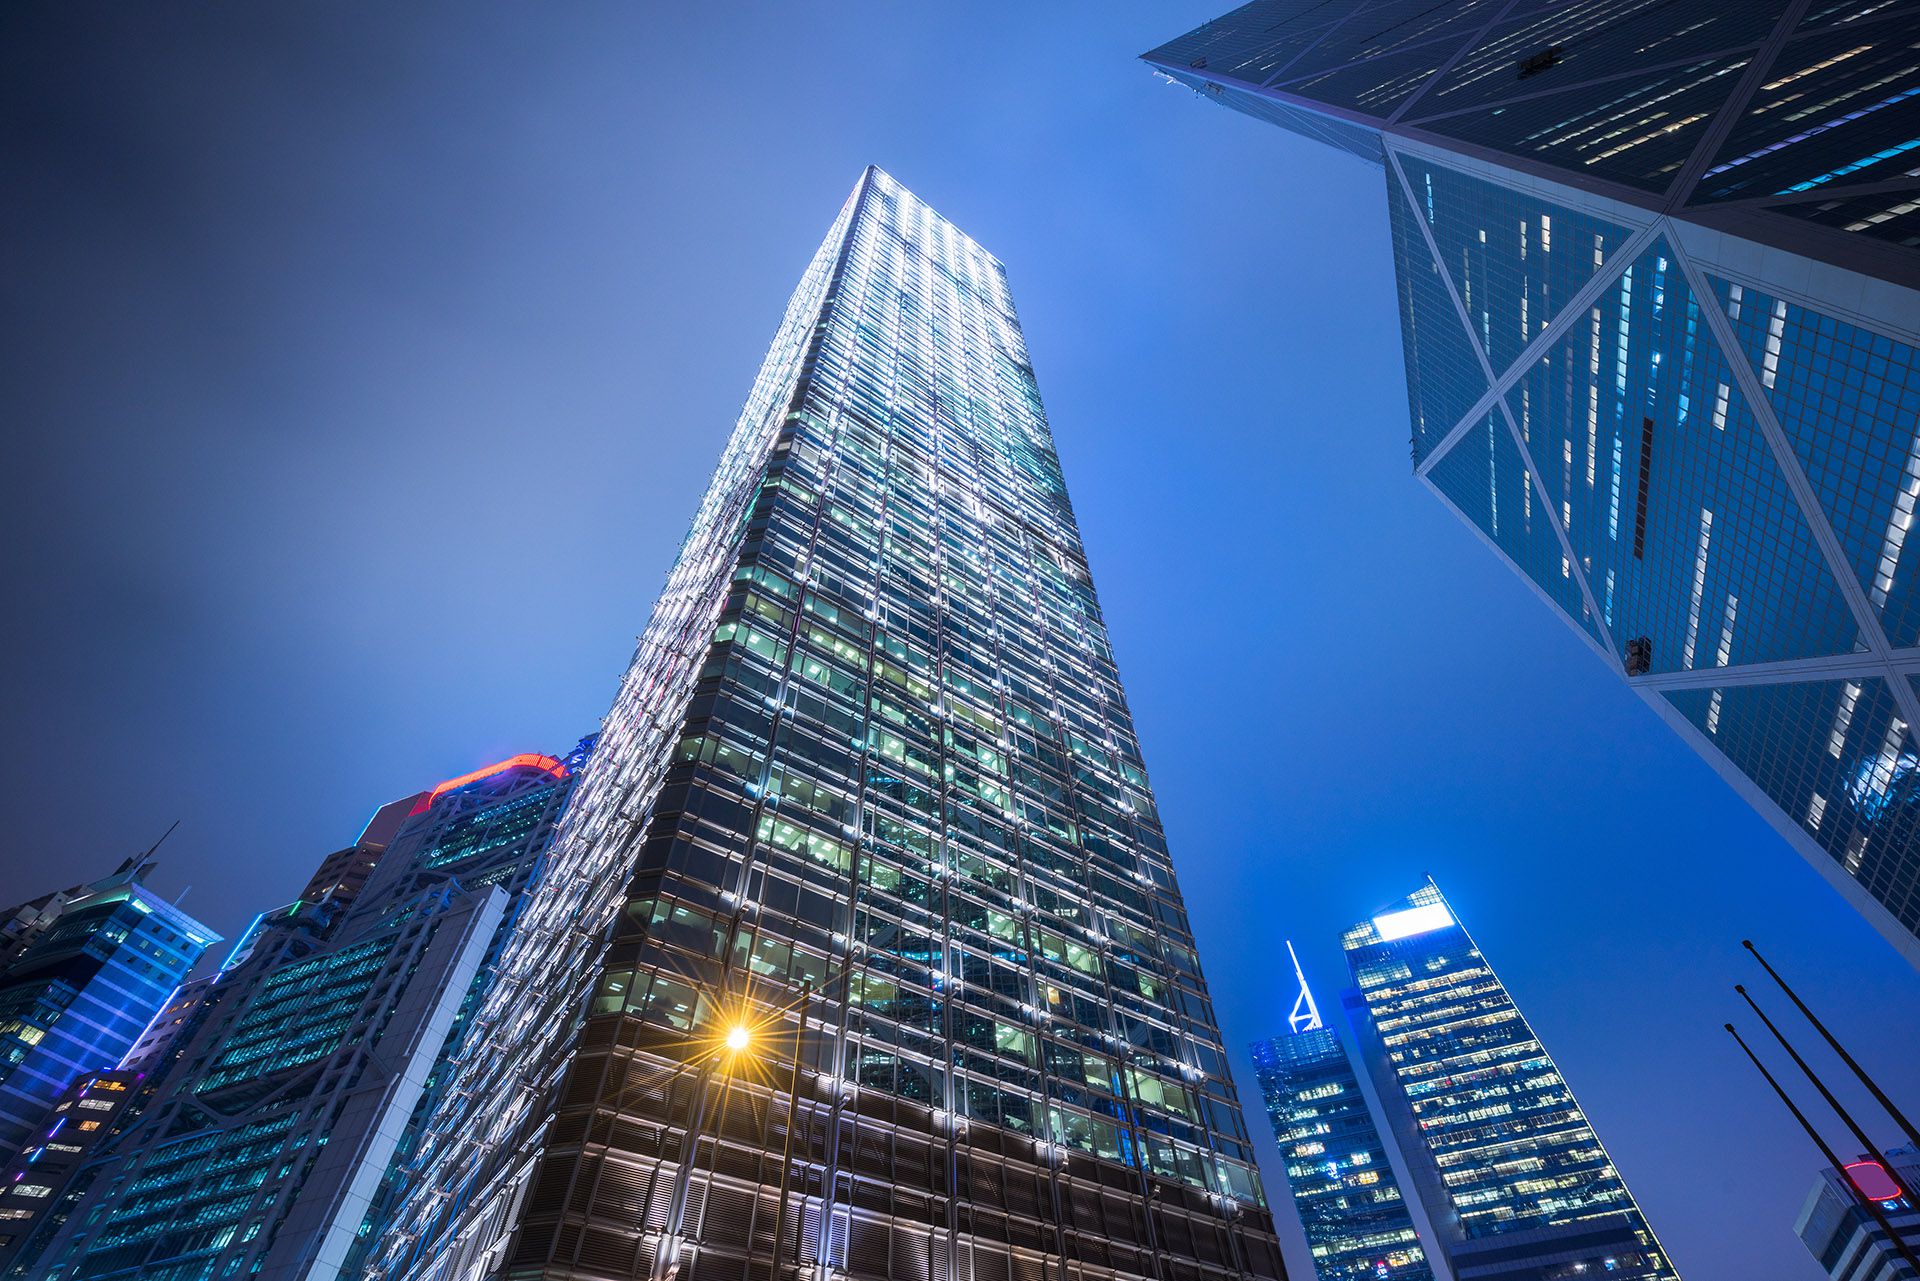 En Hong Kong, China creó Cheung Kong Center, el rascacielos de 62 pisos y 283 metros que fue terminado en 1999 donde antes estaba construido el hotel Hilton de la ciudad. Cuenta con un área de 117.100 m2 y pertenece a la Cheung Kong Holdings donde en el último piso vive su presidente